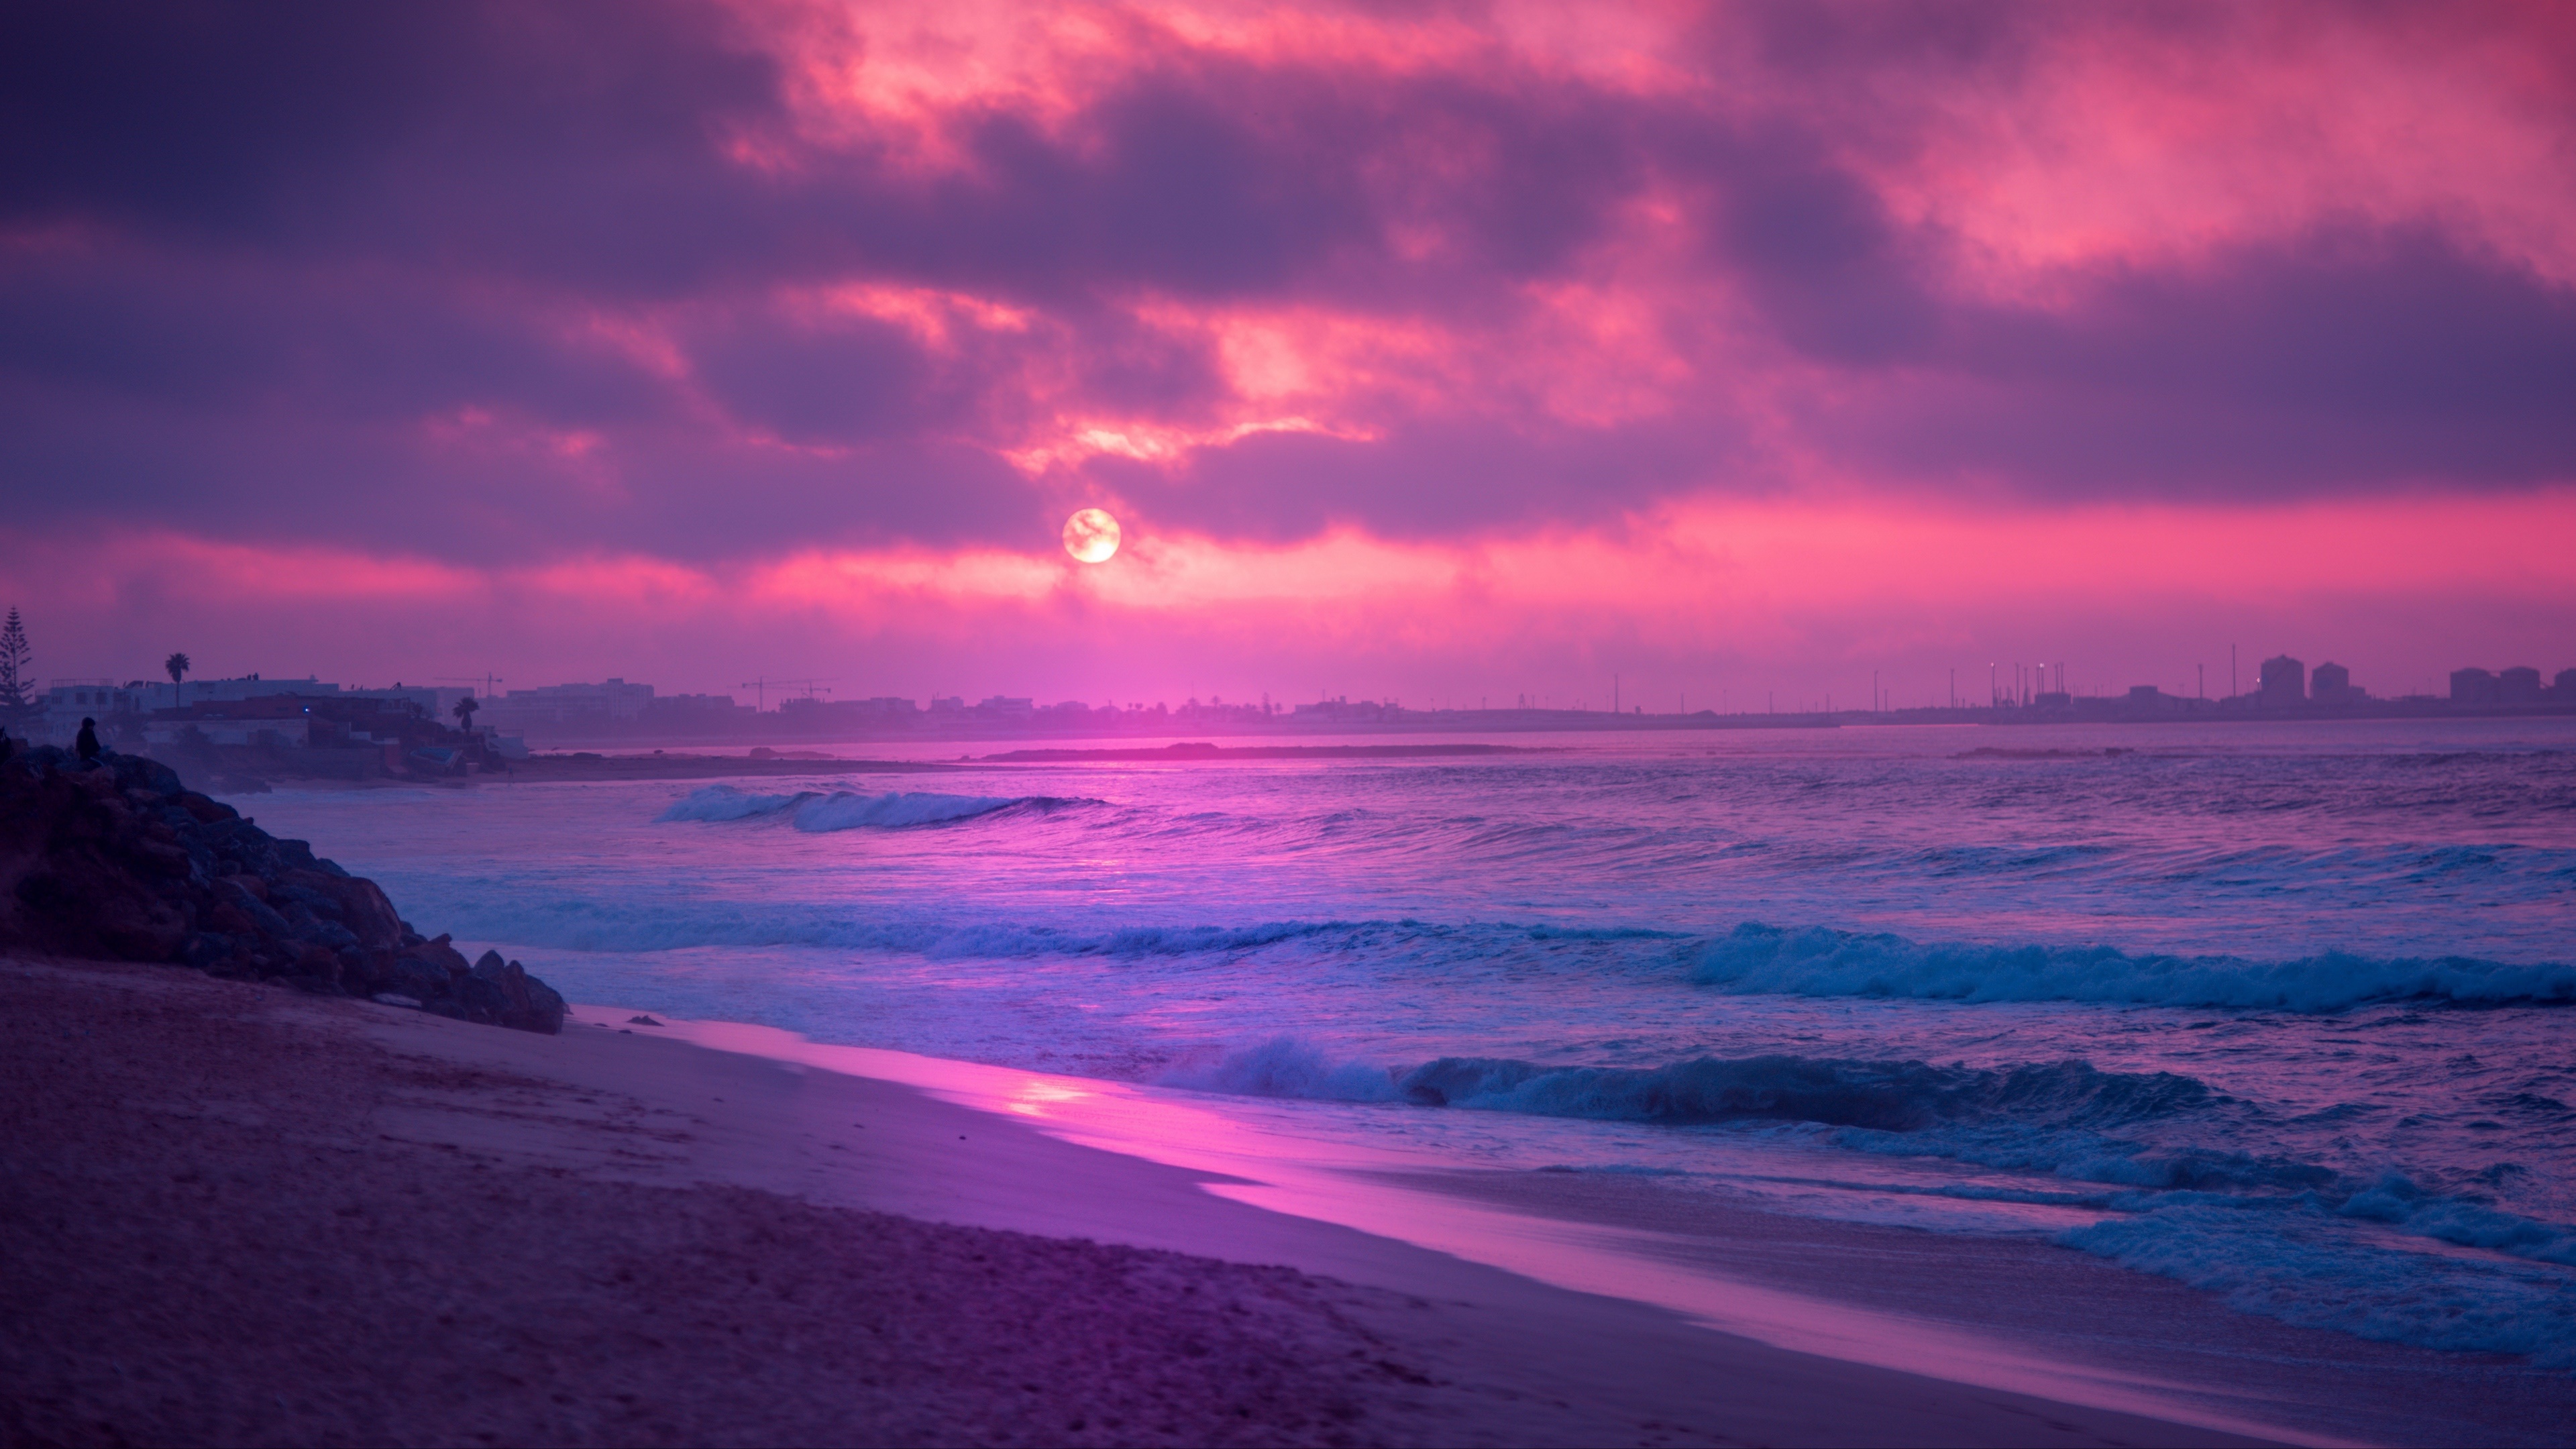 Purple Sunset 4k Ultra HD Wallpaper | Background Image ...